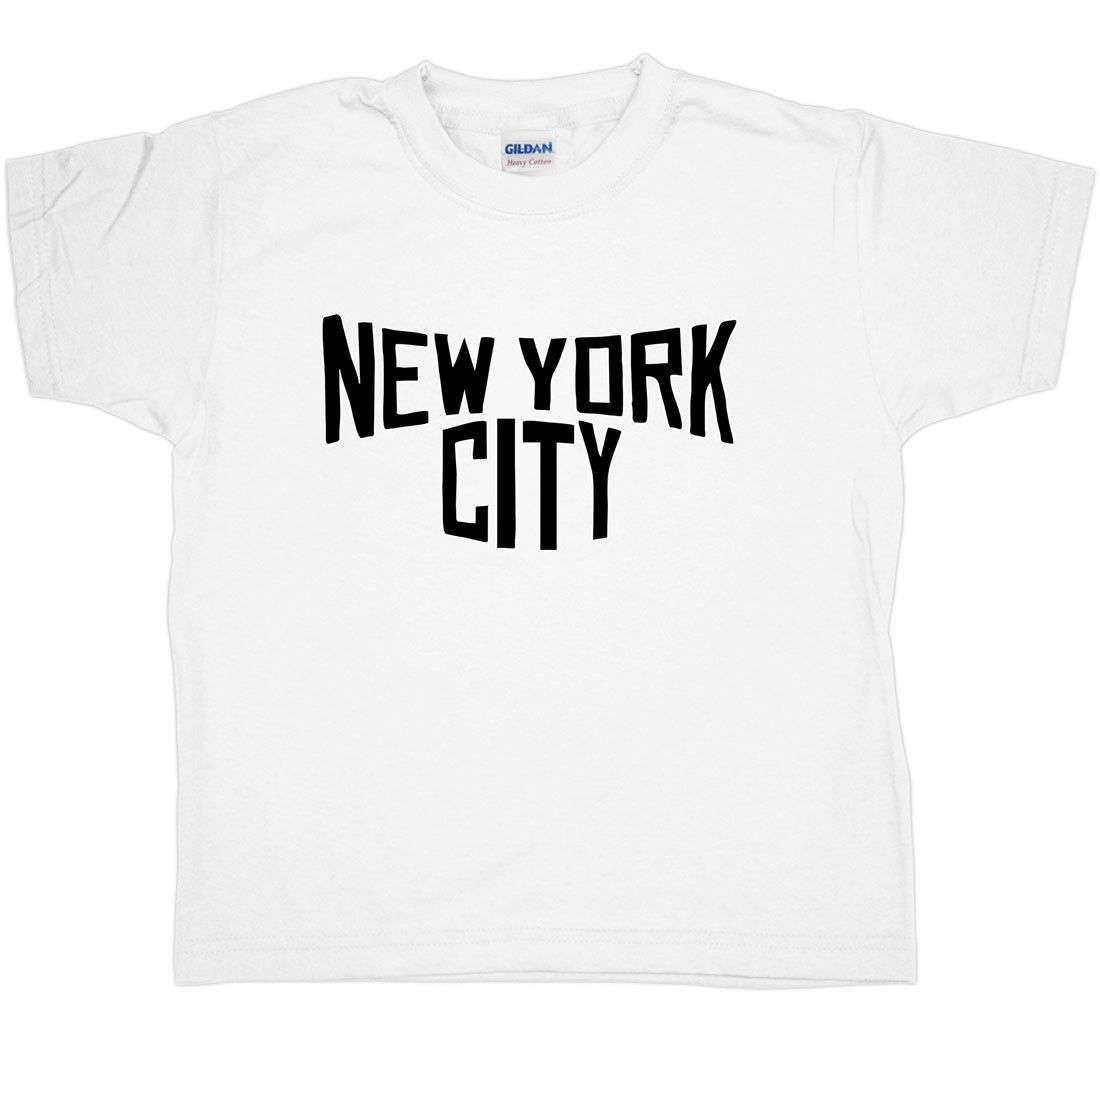 New York City Childrens T-Shirt 8Ball